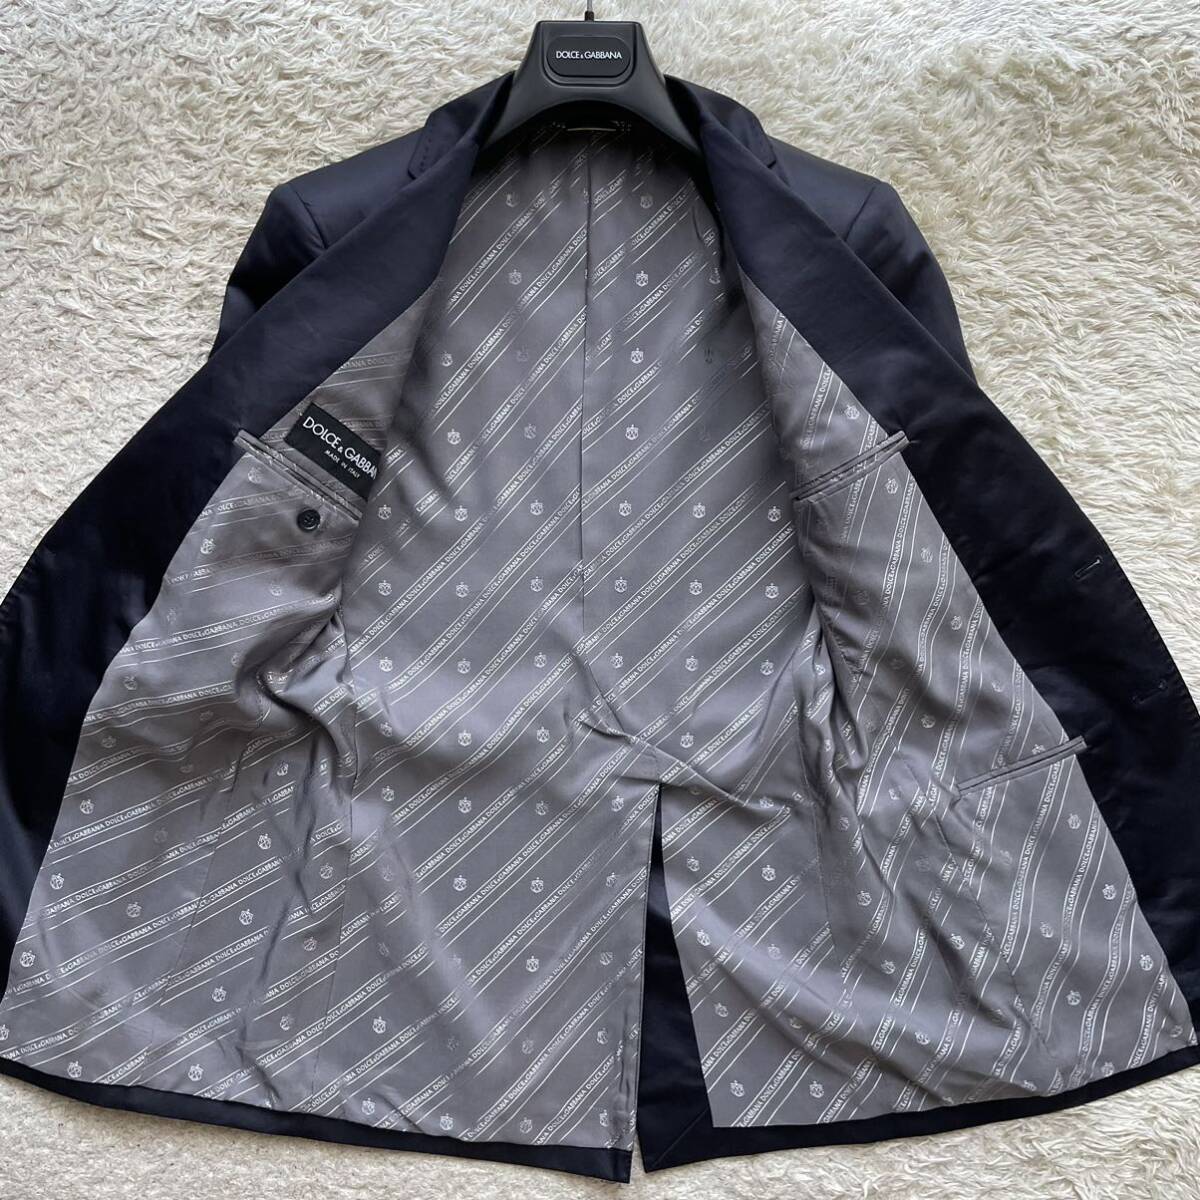  Dolce & Gabbana [ глянец . выпускает ощущение роскоши ]DOLCE&GABBANA tailored jacket подкладка монограмма смокинг M размер соответствует темный темно-синий серия 